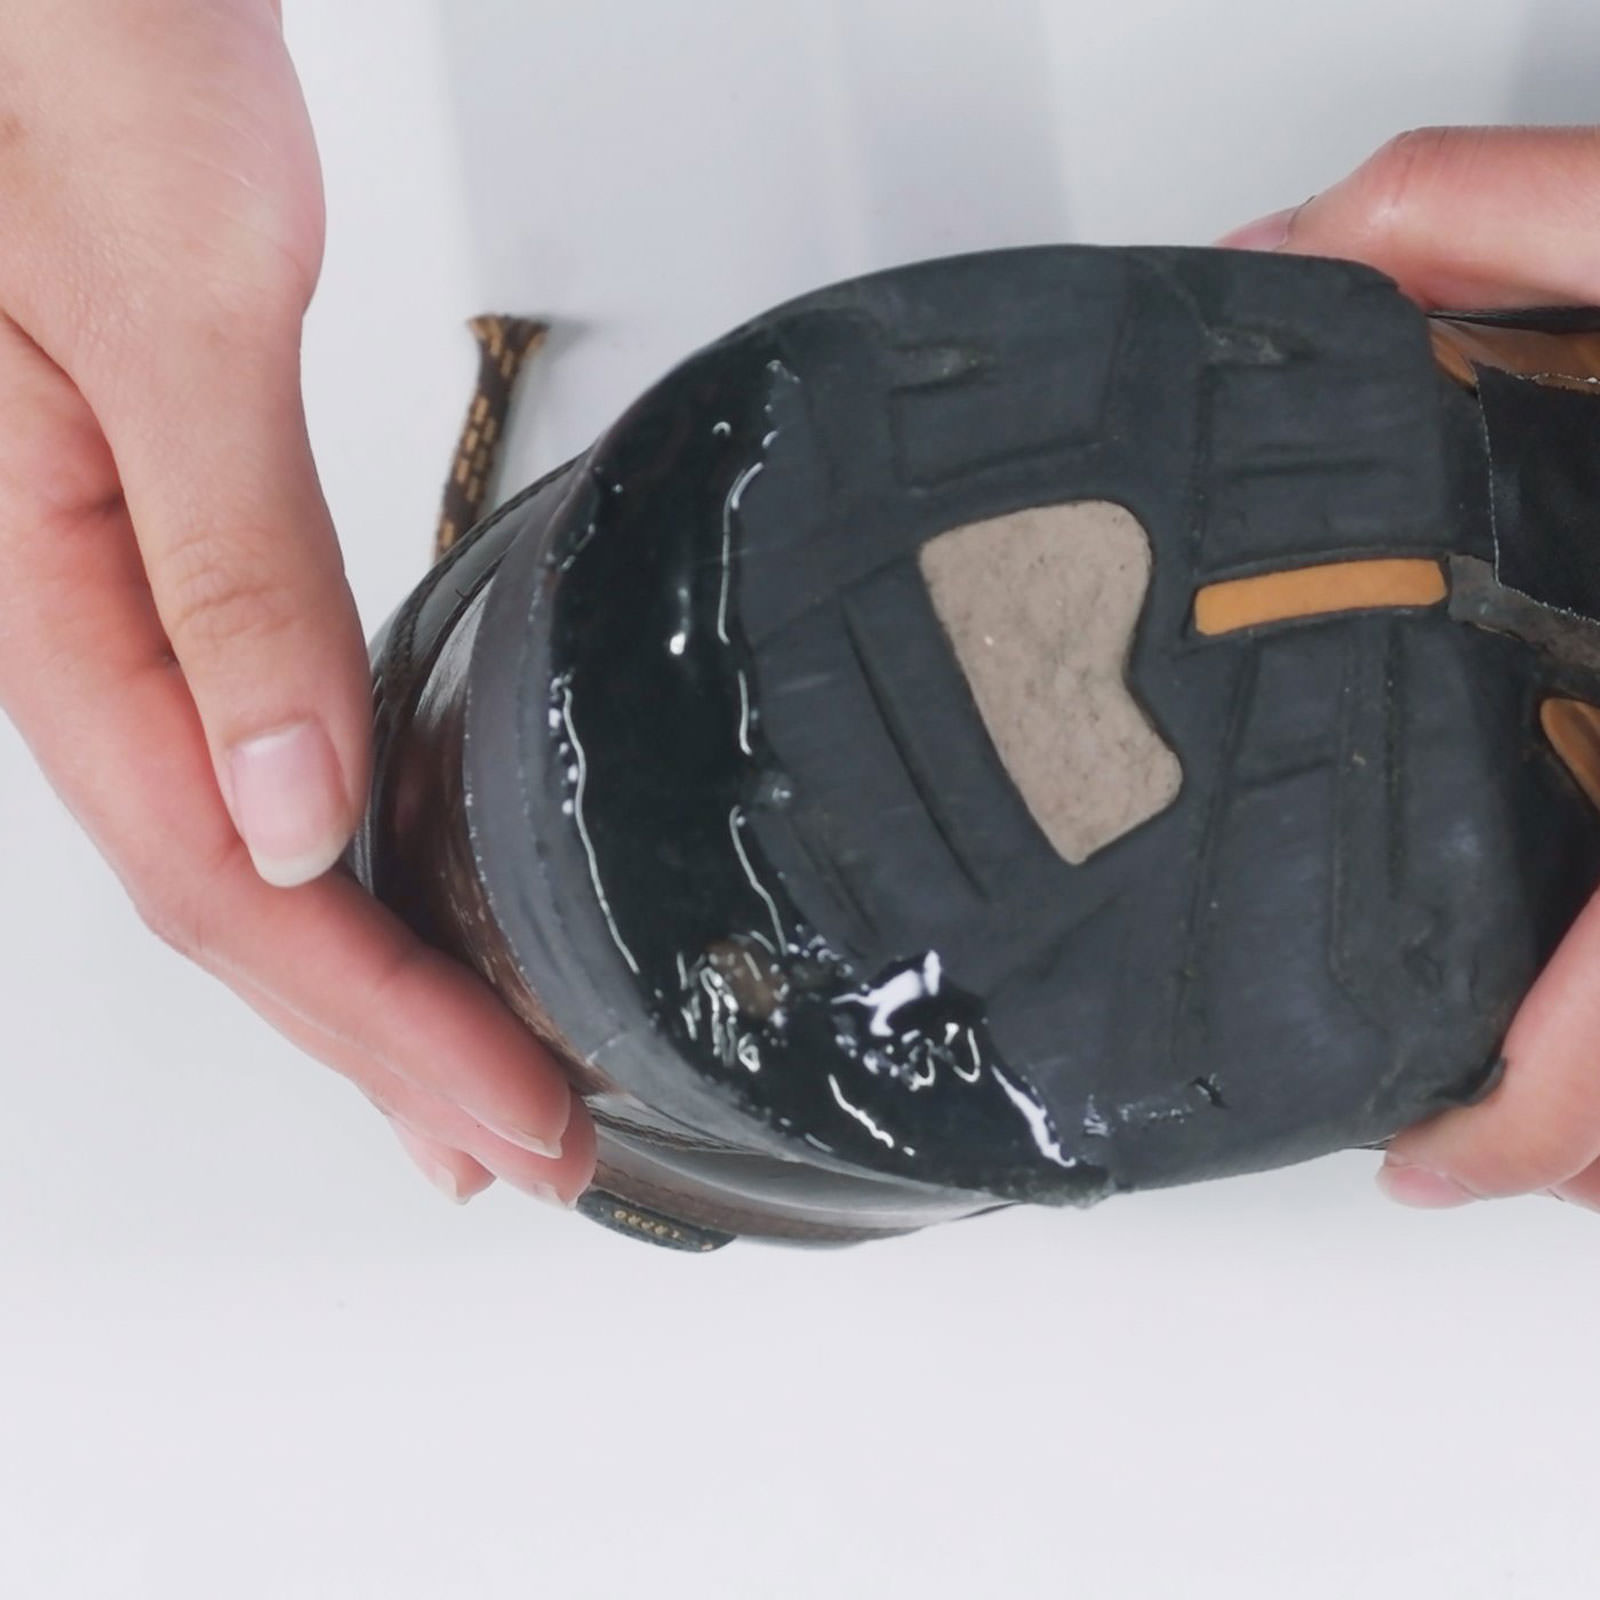 Shoe/Boot Repair Kit